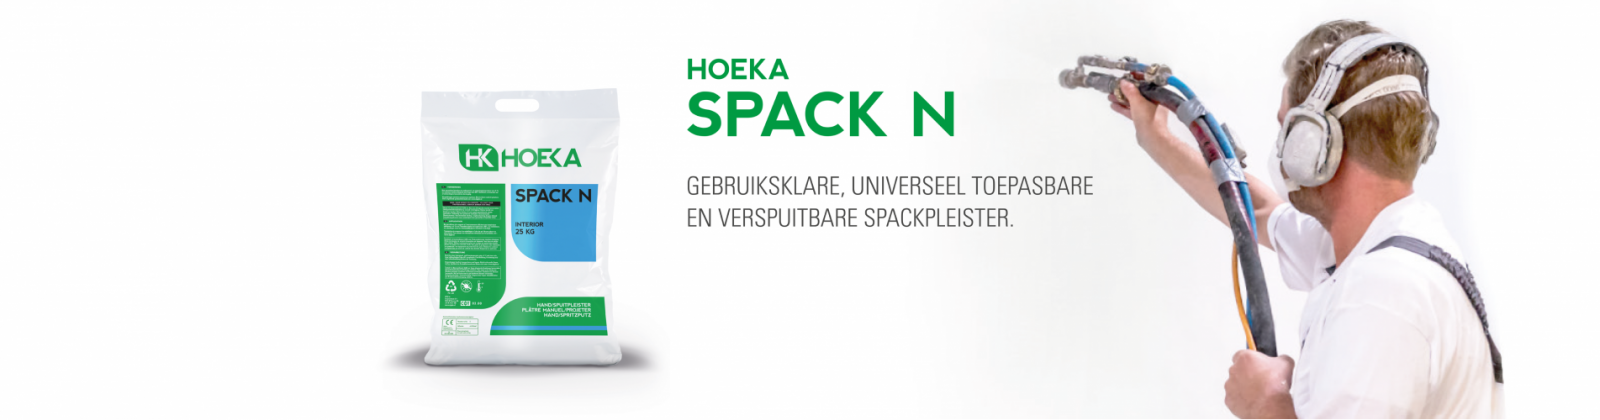 HOEKA Spack N